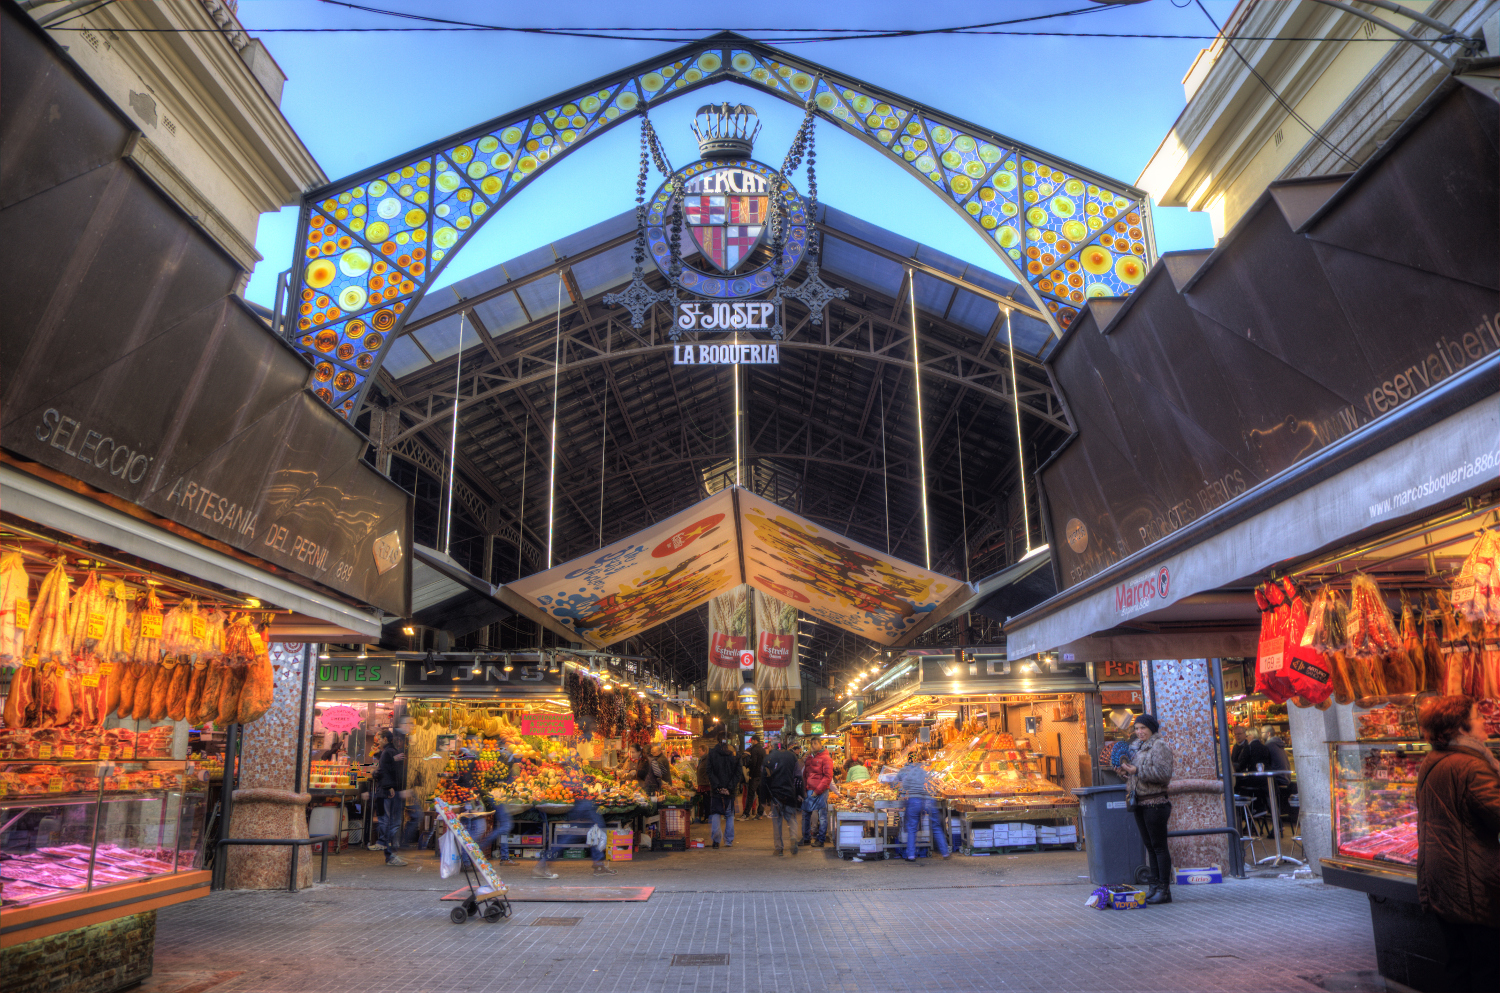 Pure foodie heaven in the heart of Barcelona: La Boqueria market. Image by Luis Davilla / Photolibrary / Getty